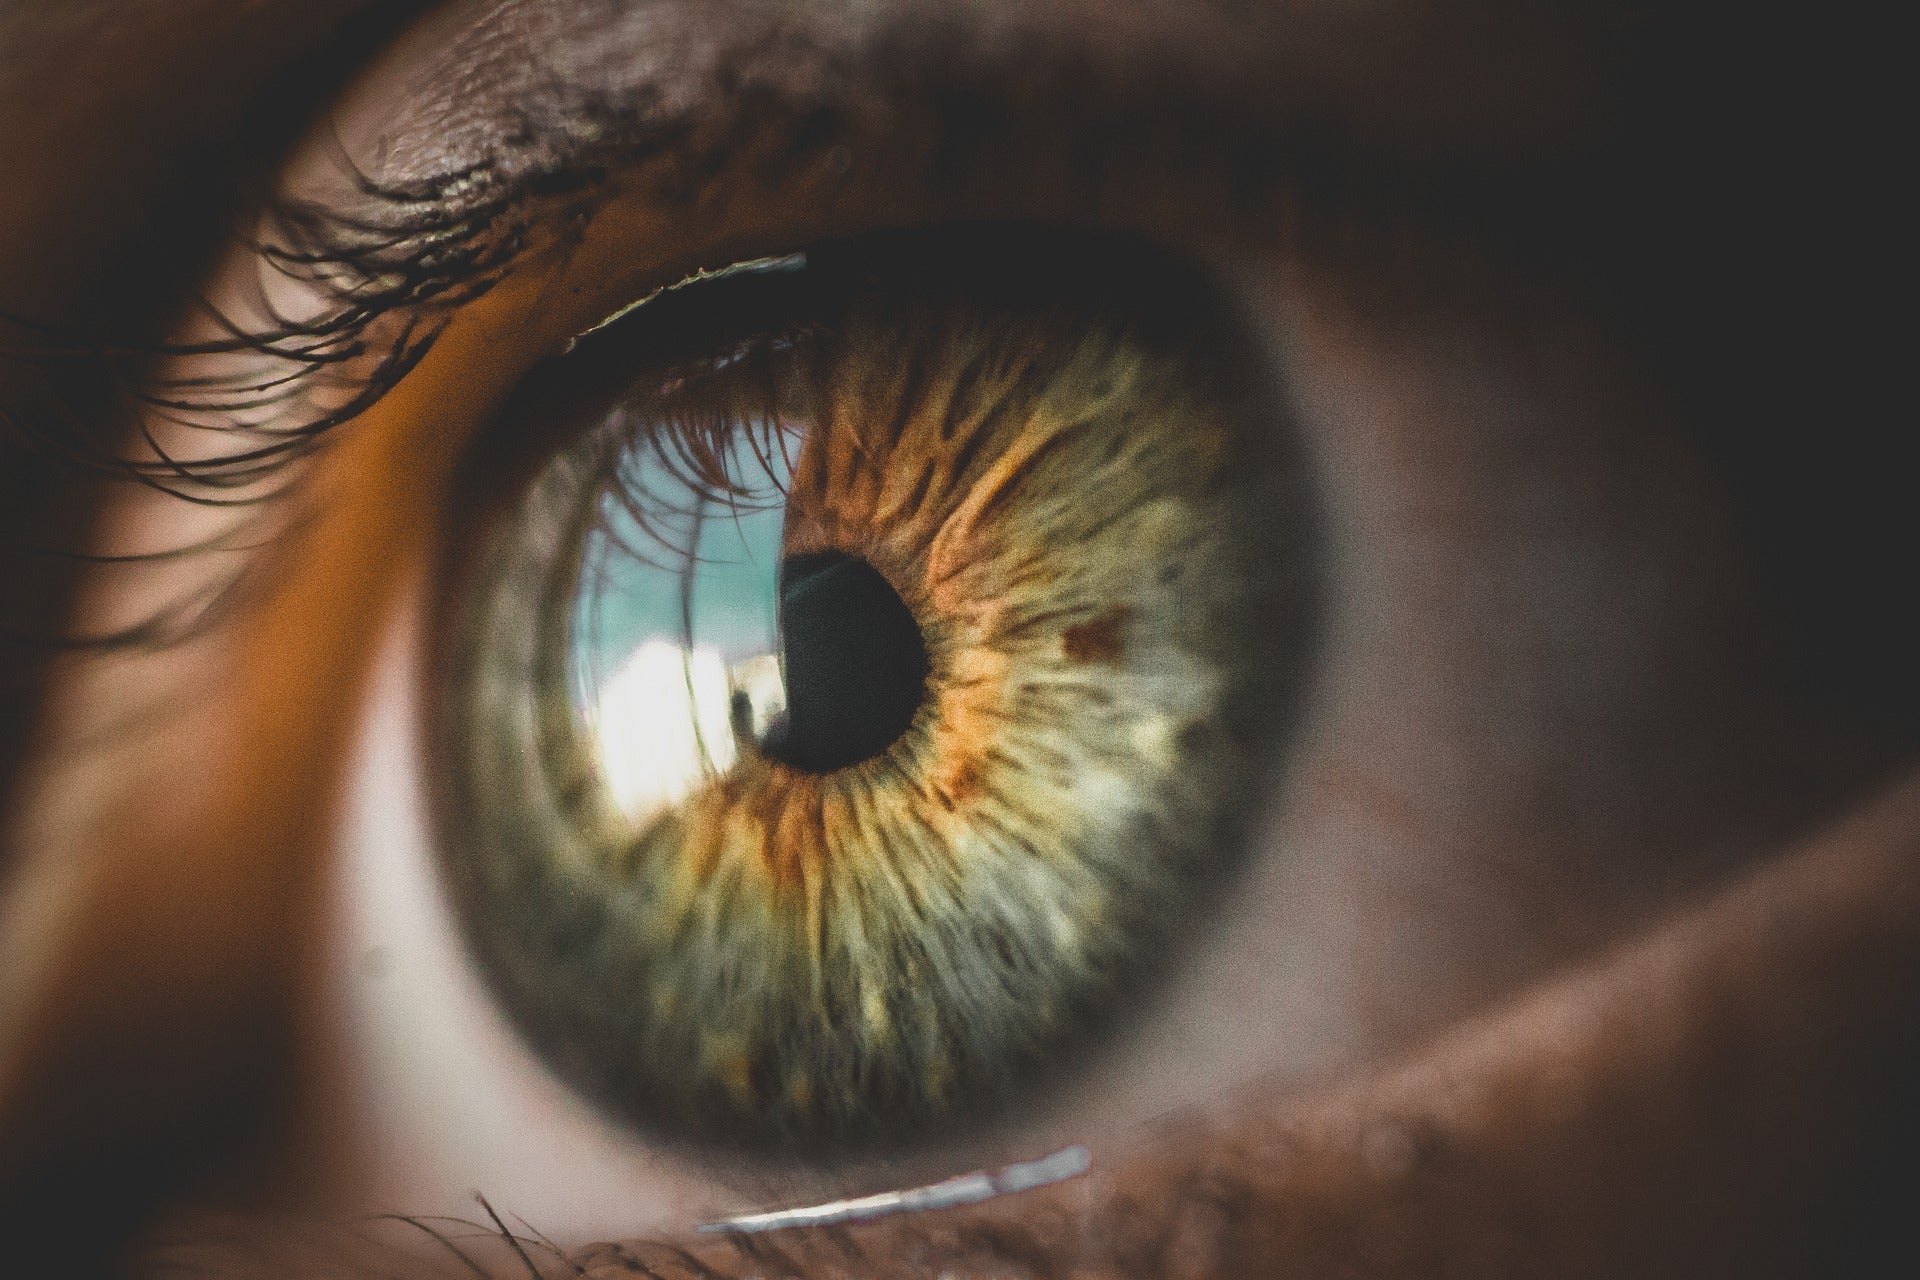 Científicos revivieron células sensibles a la luz de ojos muertos